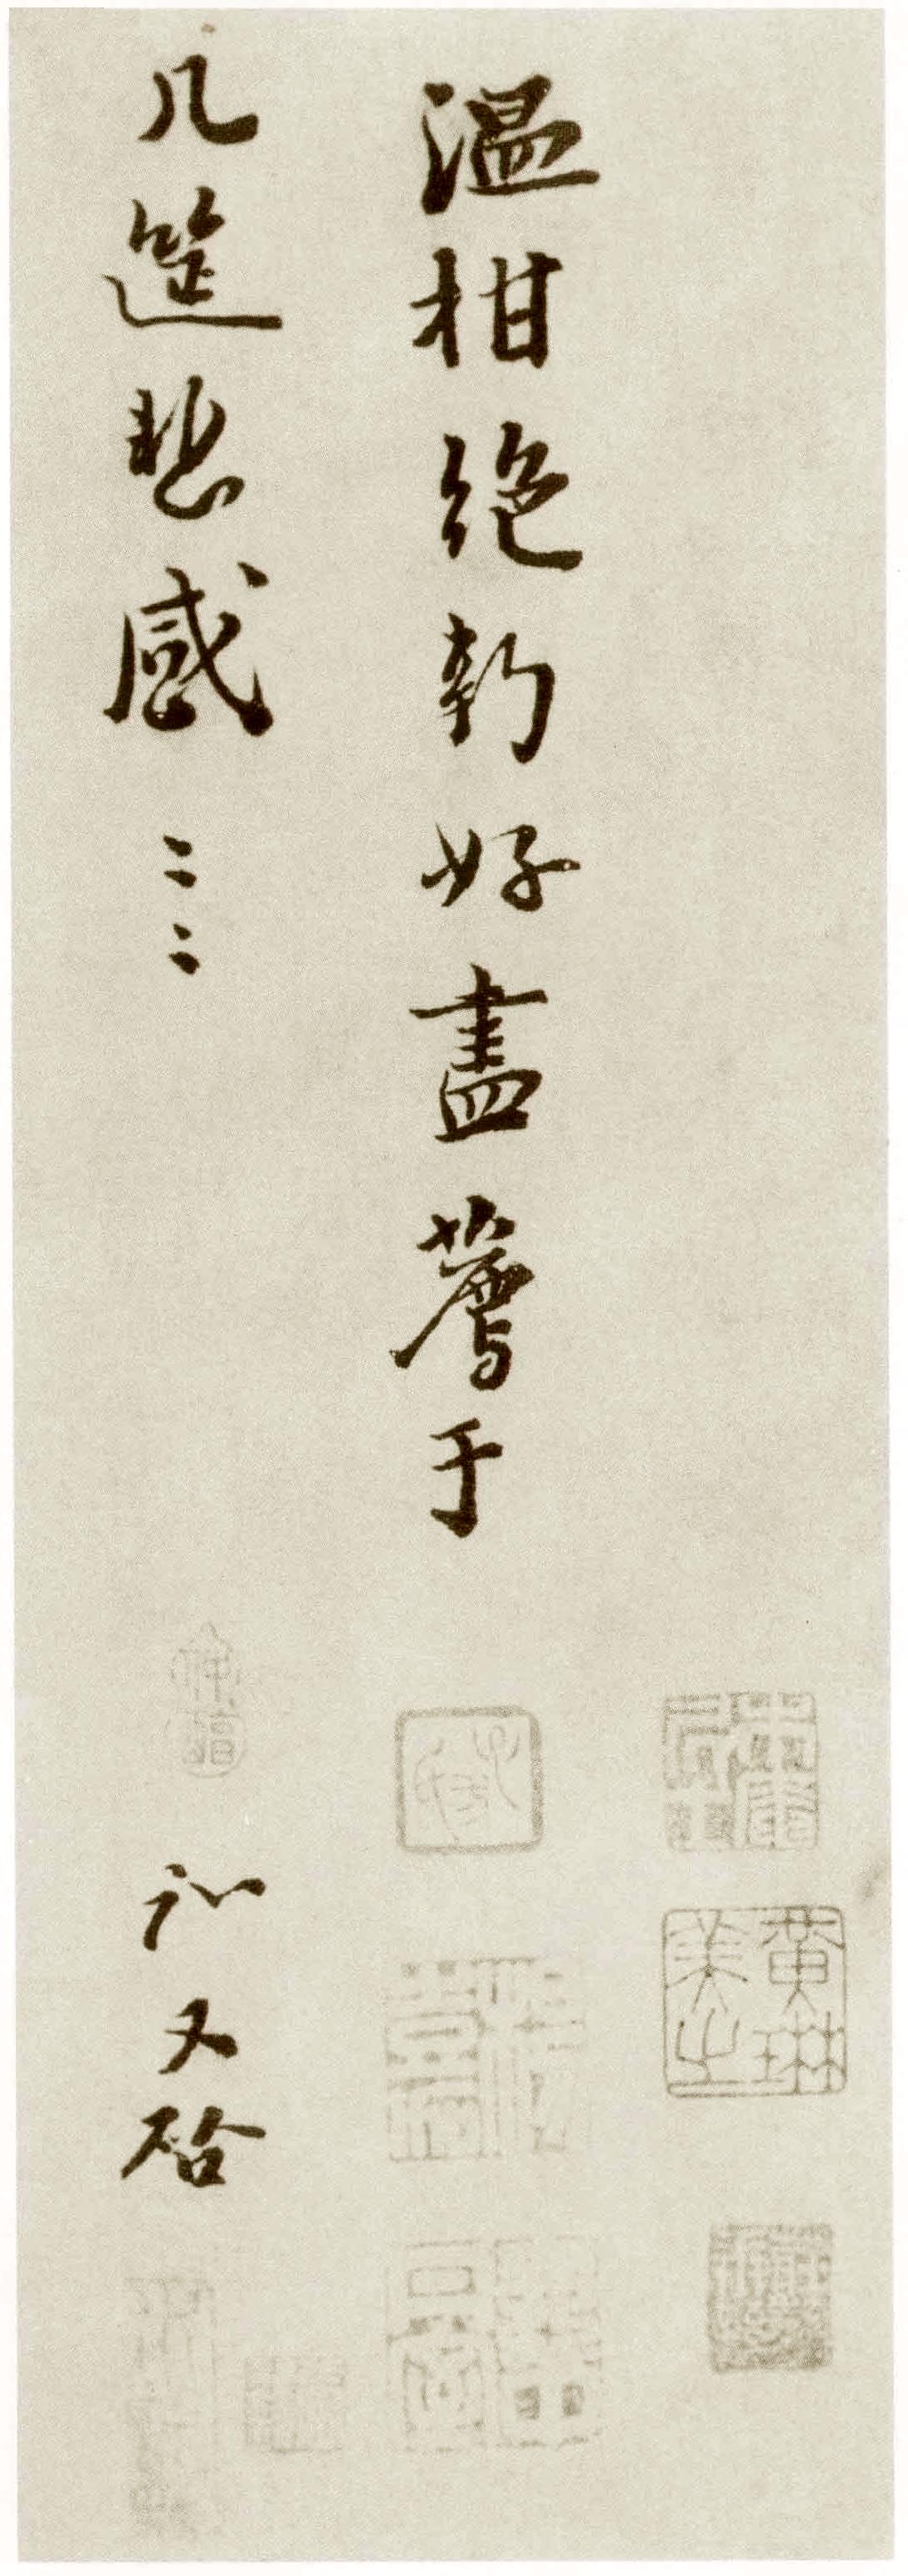 富弼行书《温柑帖》-台北故宫博物院藏(图4)